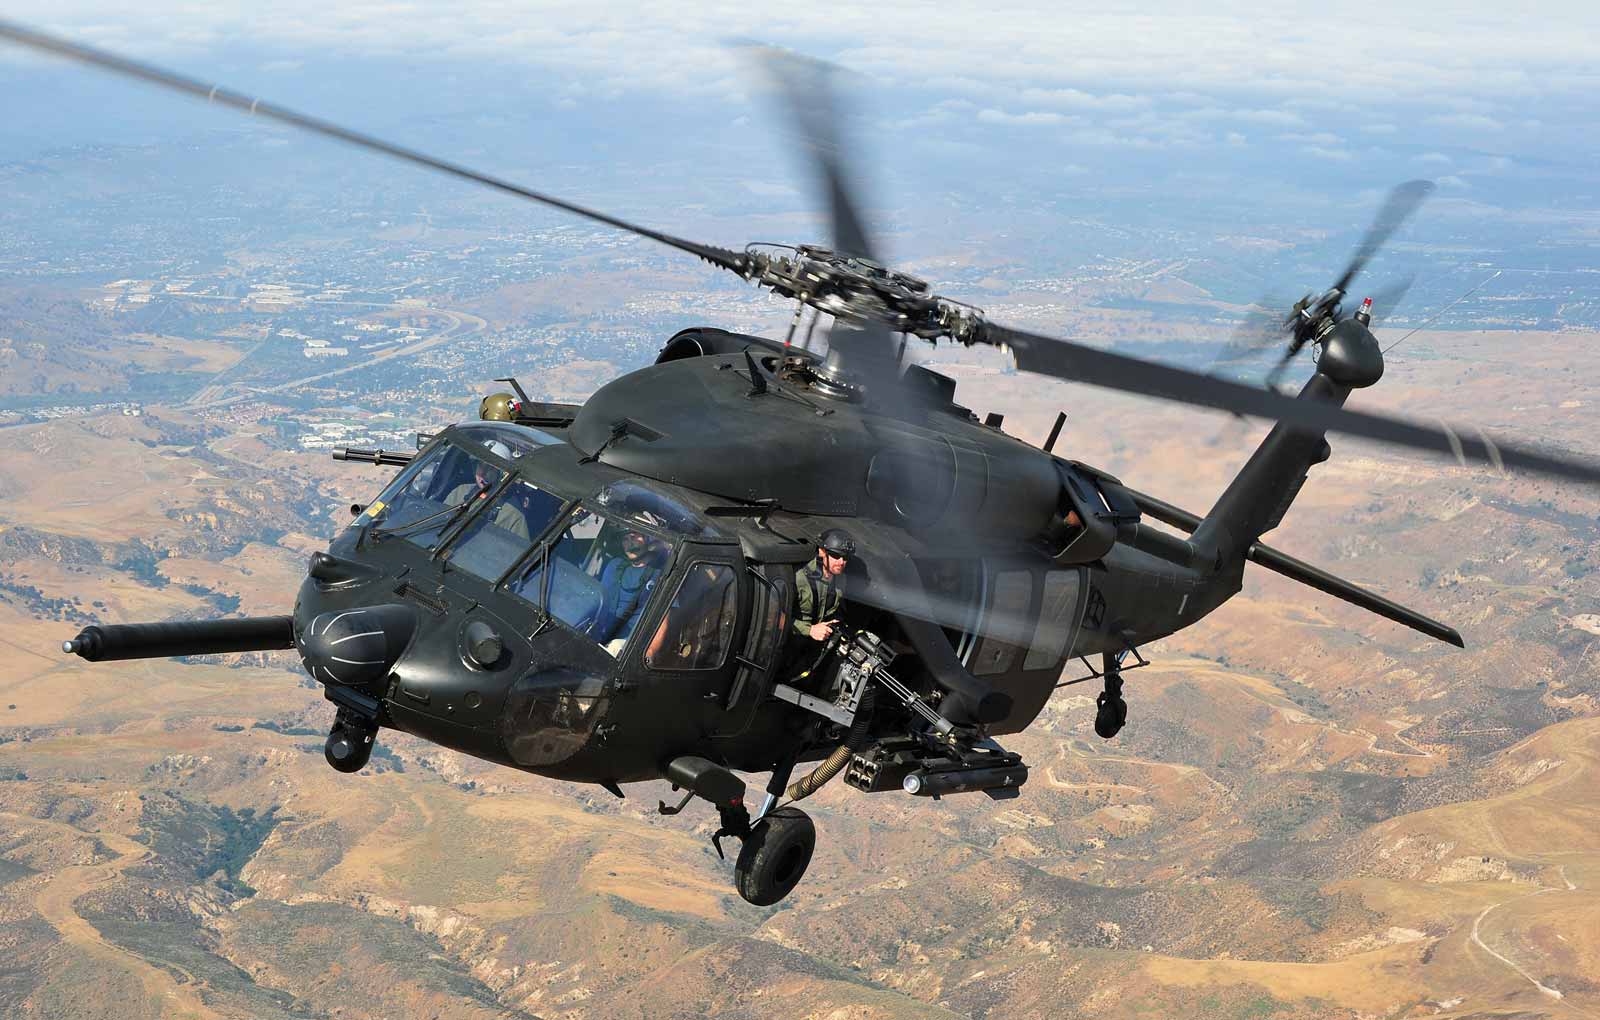 Вертолет uh 60 black hawk. Вертолёт uh-60 Black Hawk. Sikorsky uh-60 Black Hawk" черный ястреб. Вертолет Блэк Хоук. Sikorsky uh-60 Black Hawk вертолёты США.